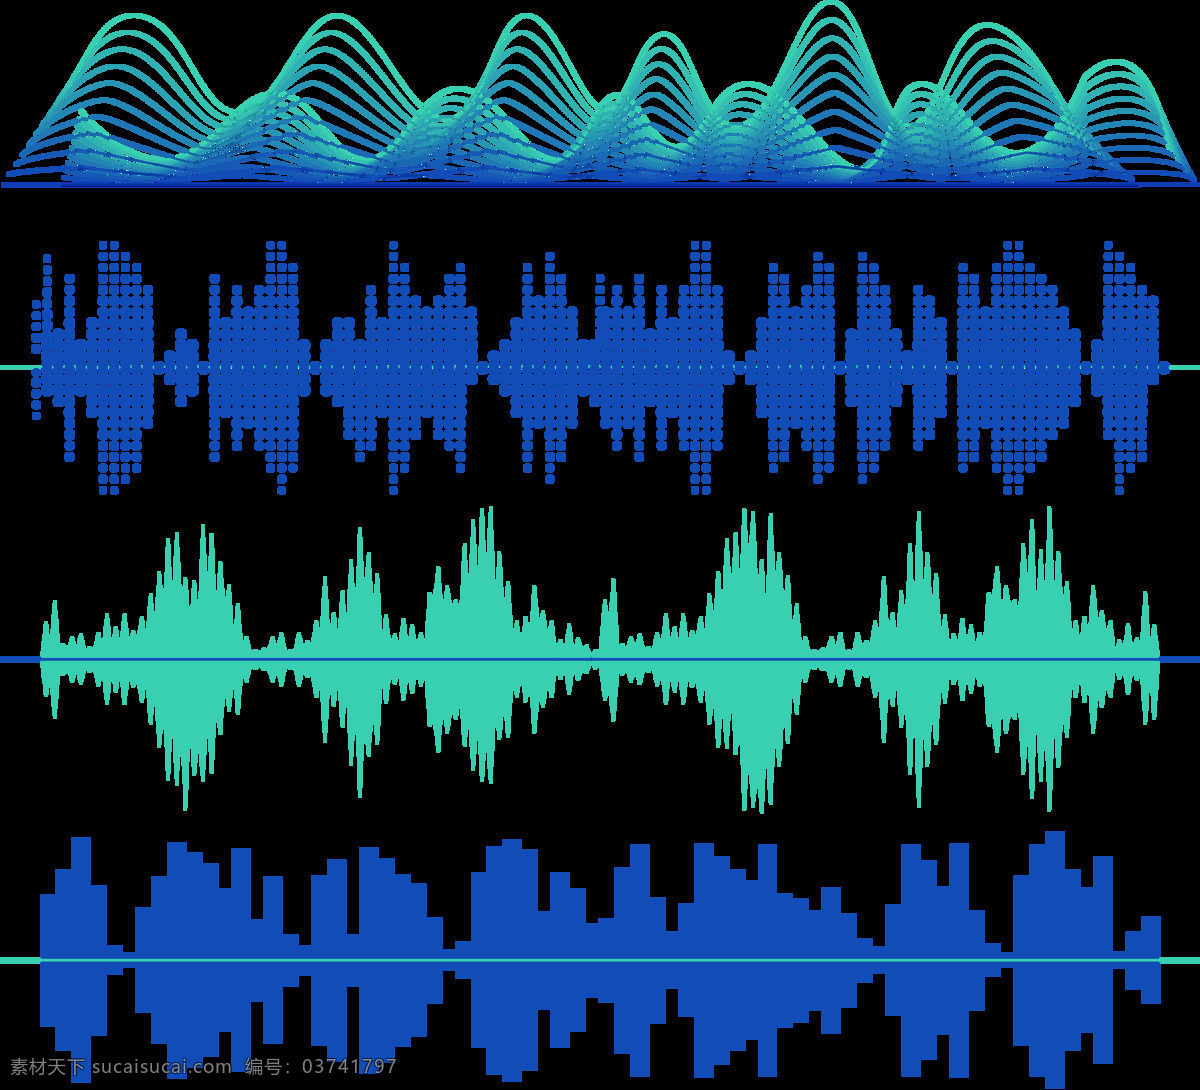 抽象 蓝色 声波 图案 免 抠 透明 图 层 音乐声波 声音波 均衡器 曲线 音量 显示 背景 音乐素材 线条 声波图形 声音波形 声波素材 音波线条 素材声音 音乐符号